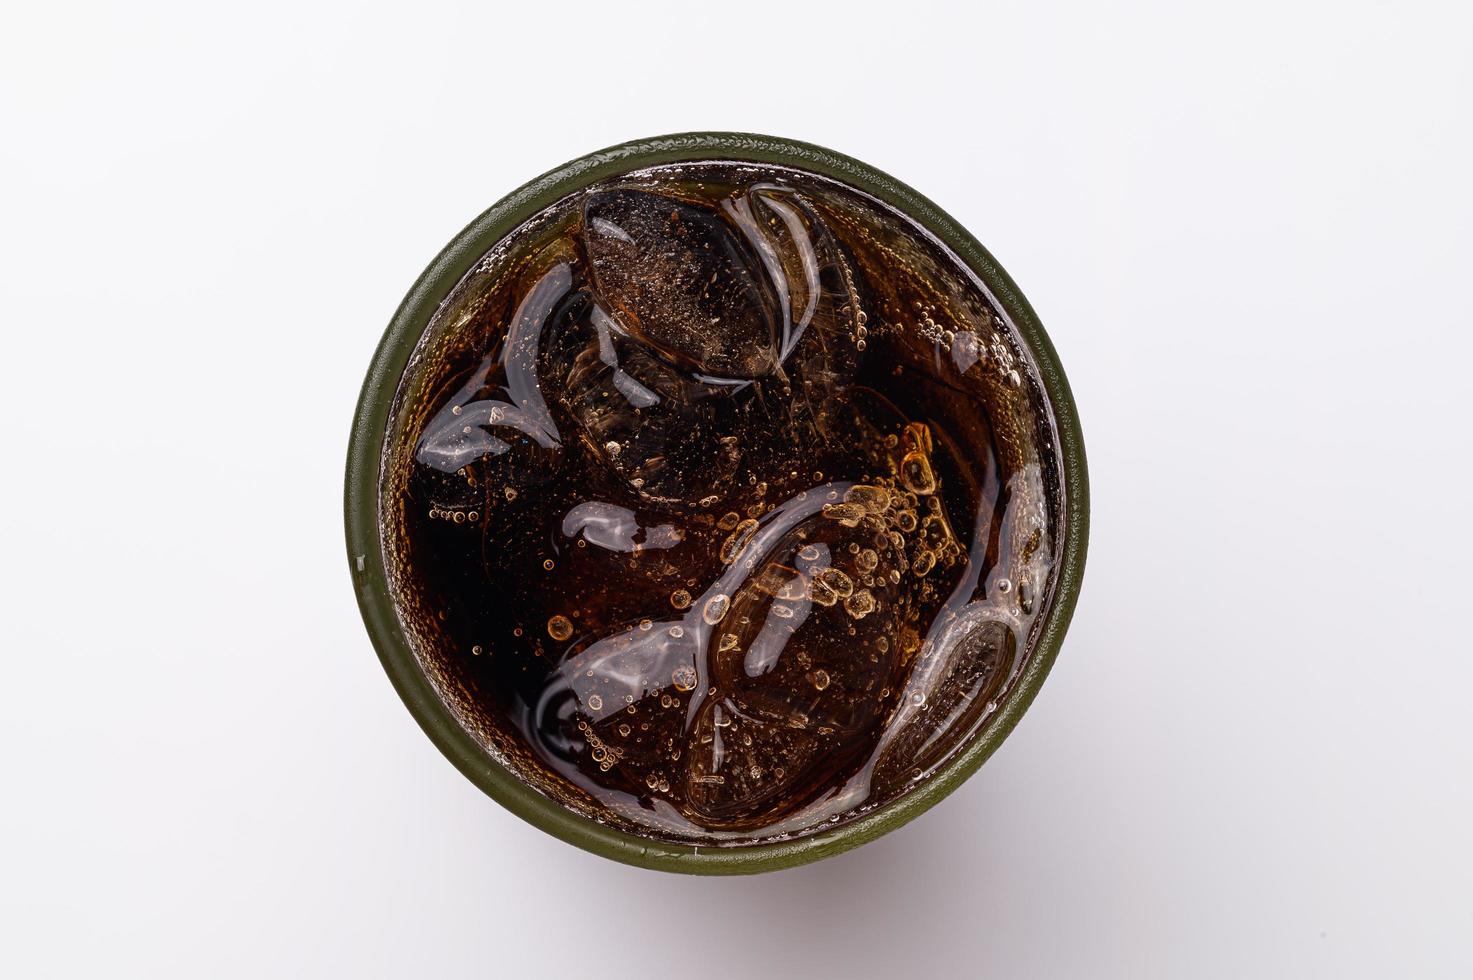 cola in glas met heldere ijsblokjes geïsoleerd op witte achtergrond foto